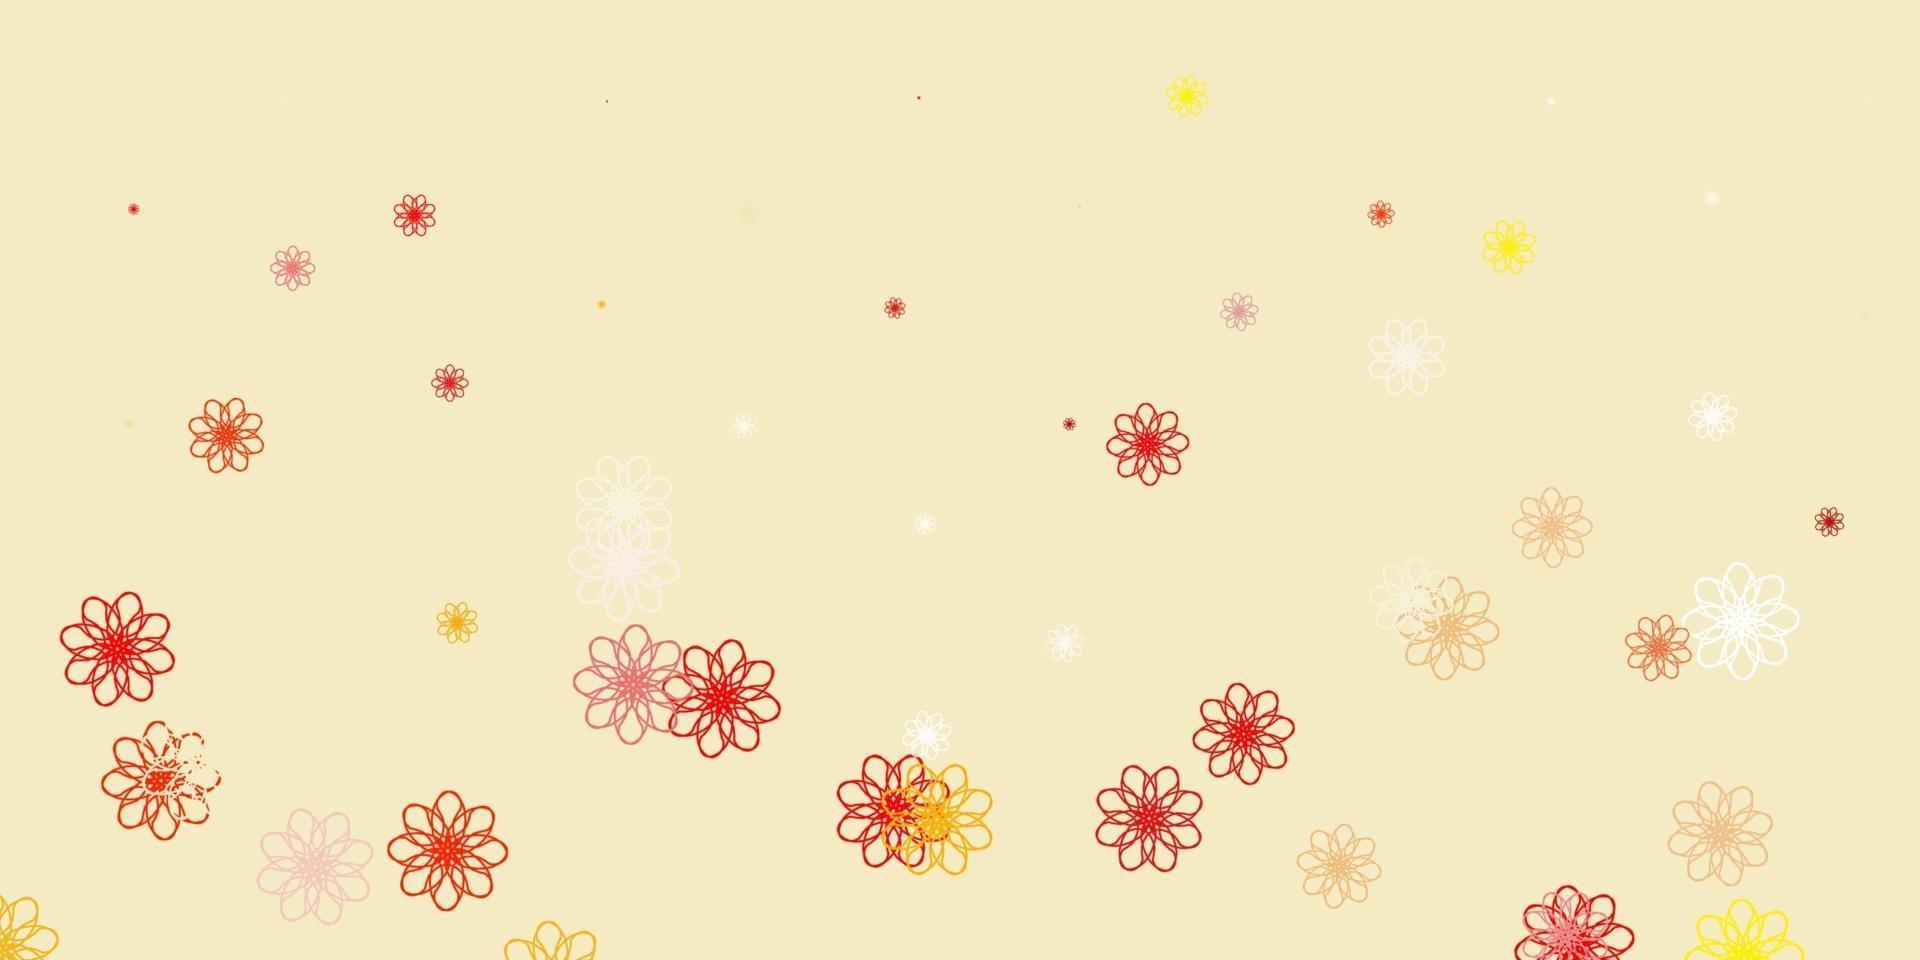 texture de doodle vecteur rose clair, jaune avec des fleurs.